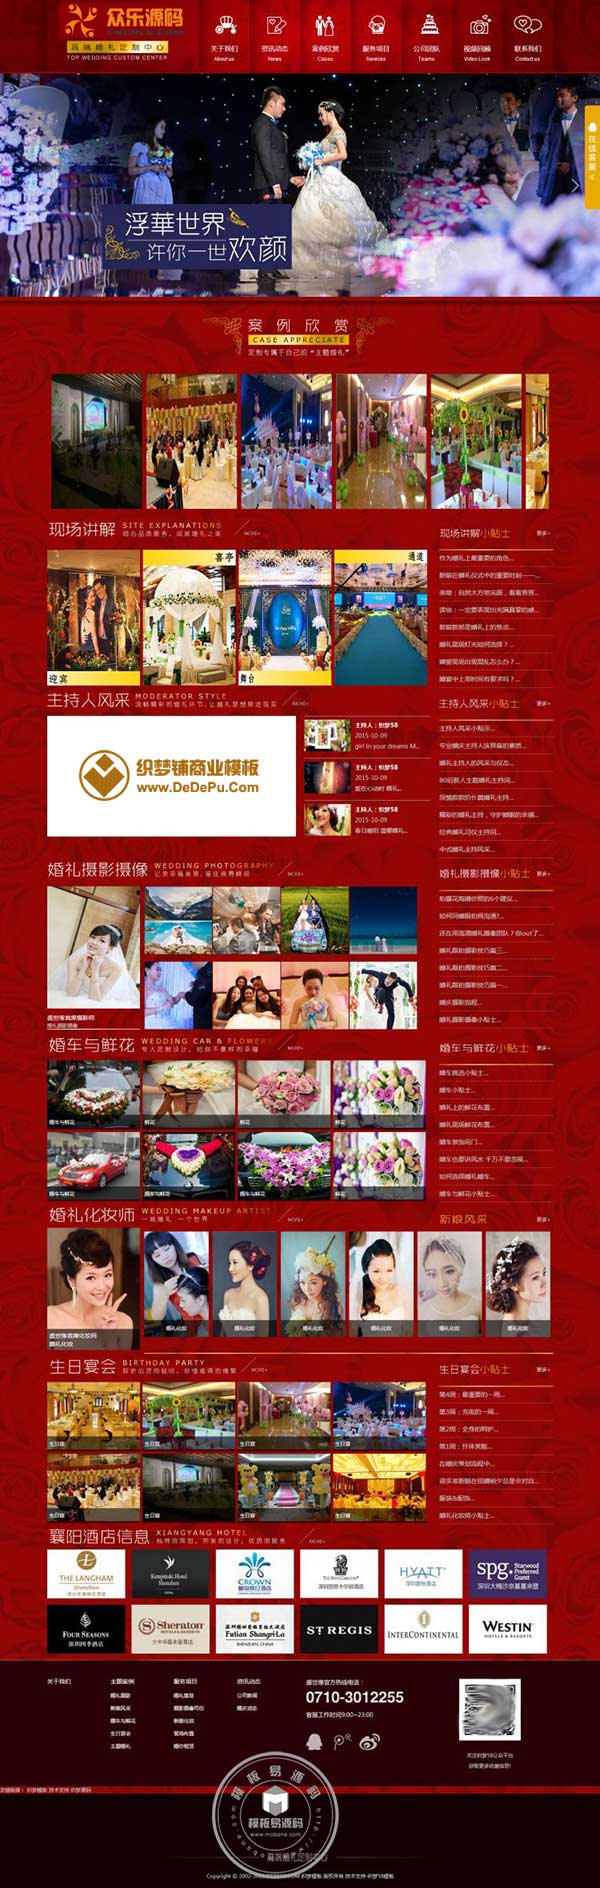 红色大气婚庆婚礼策划公司网站织梦模板 dedecms织梦模板下载